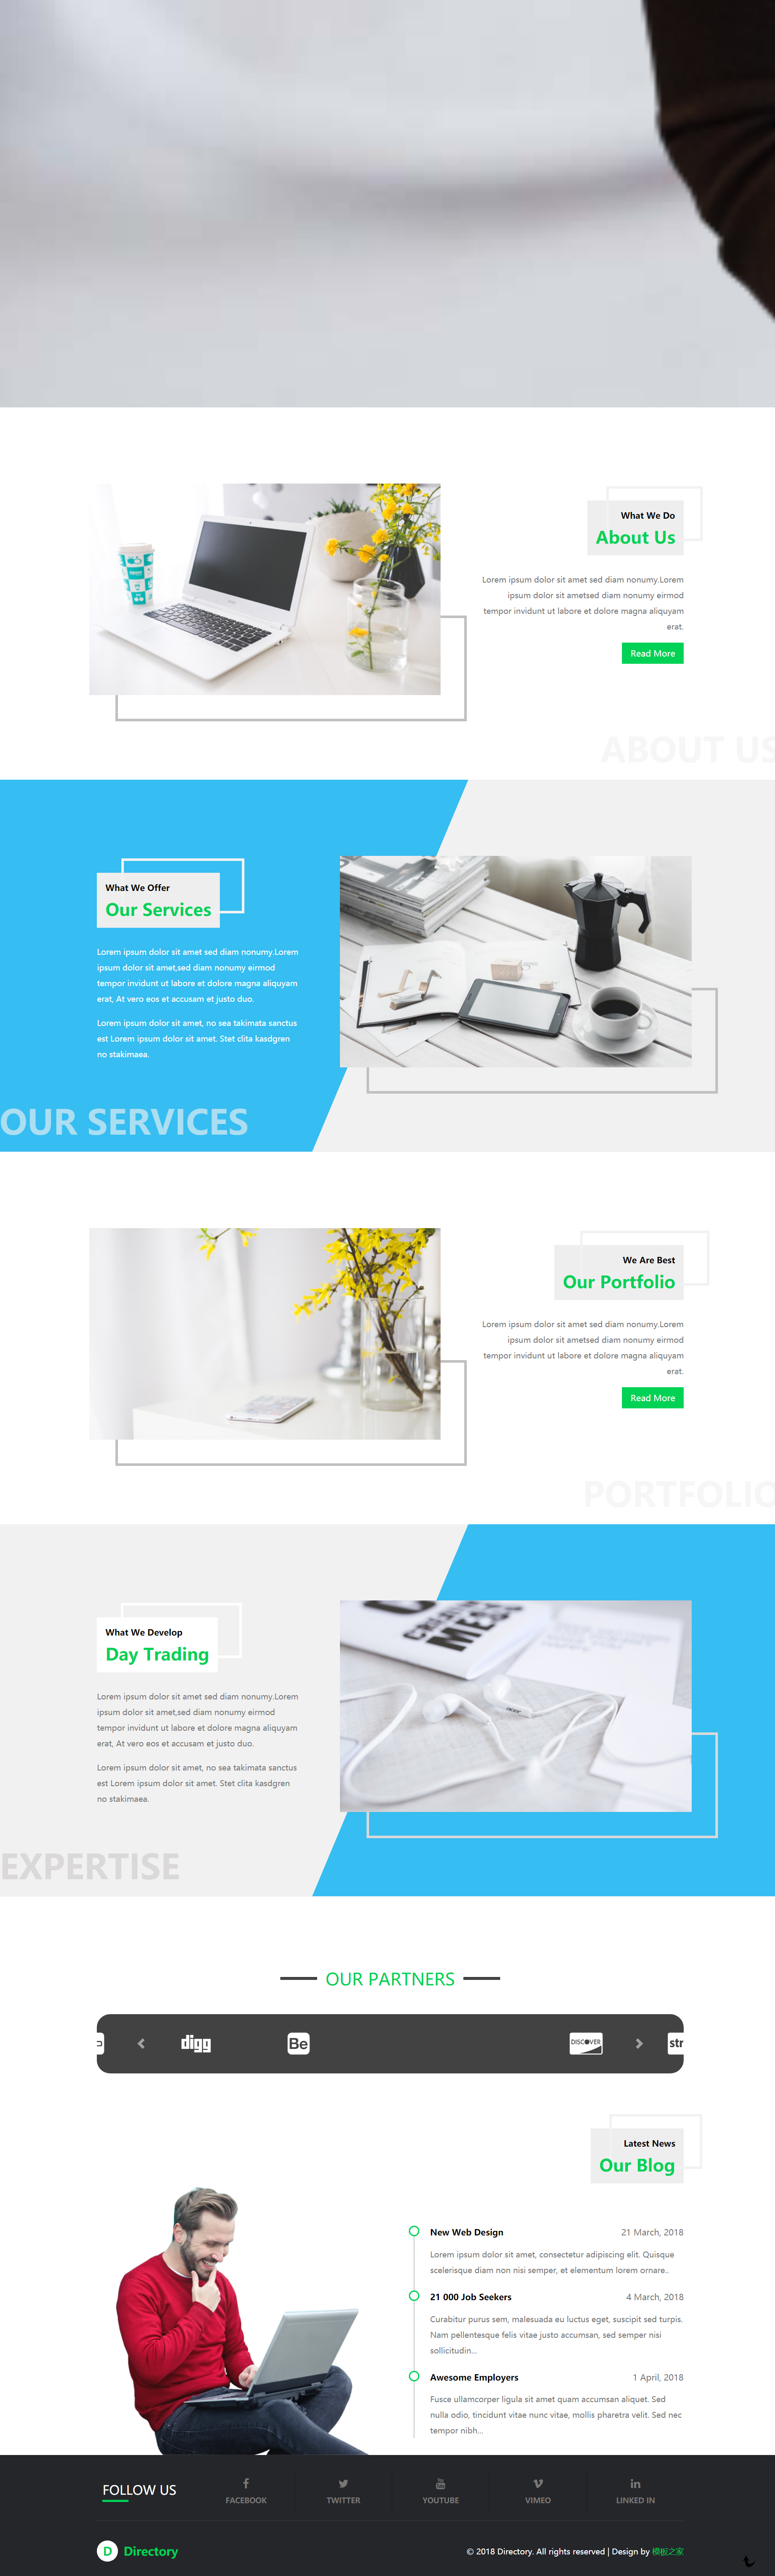 绿色简洁风格响应式商务智能服务企业网站模板